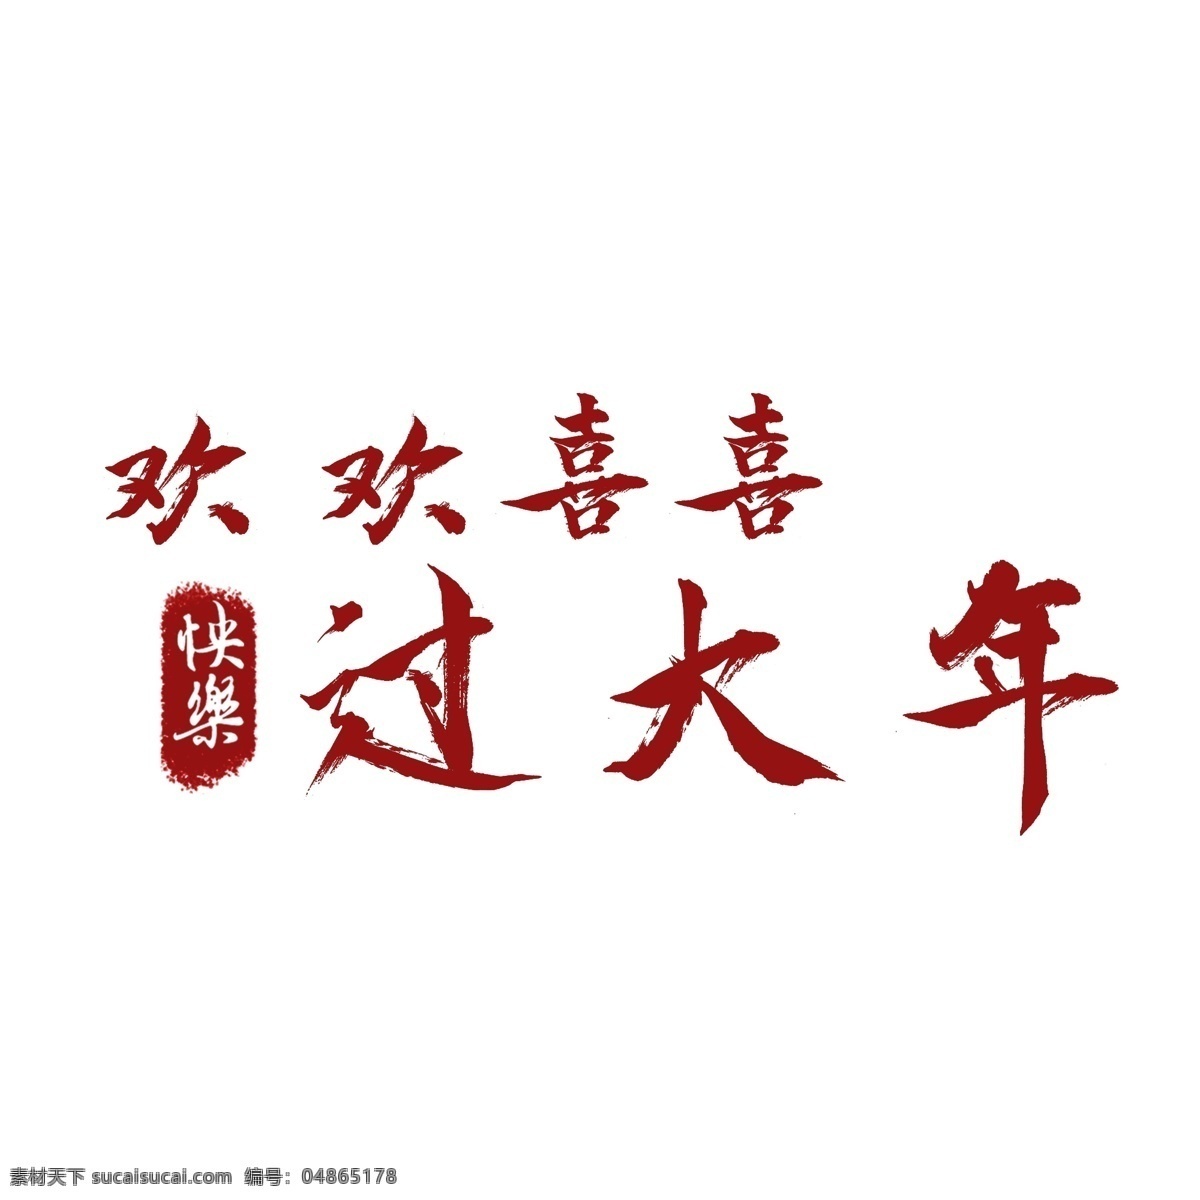 中国 红 书法 字 欢欢喜喜 大年 商用 中国红 喜庆